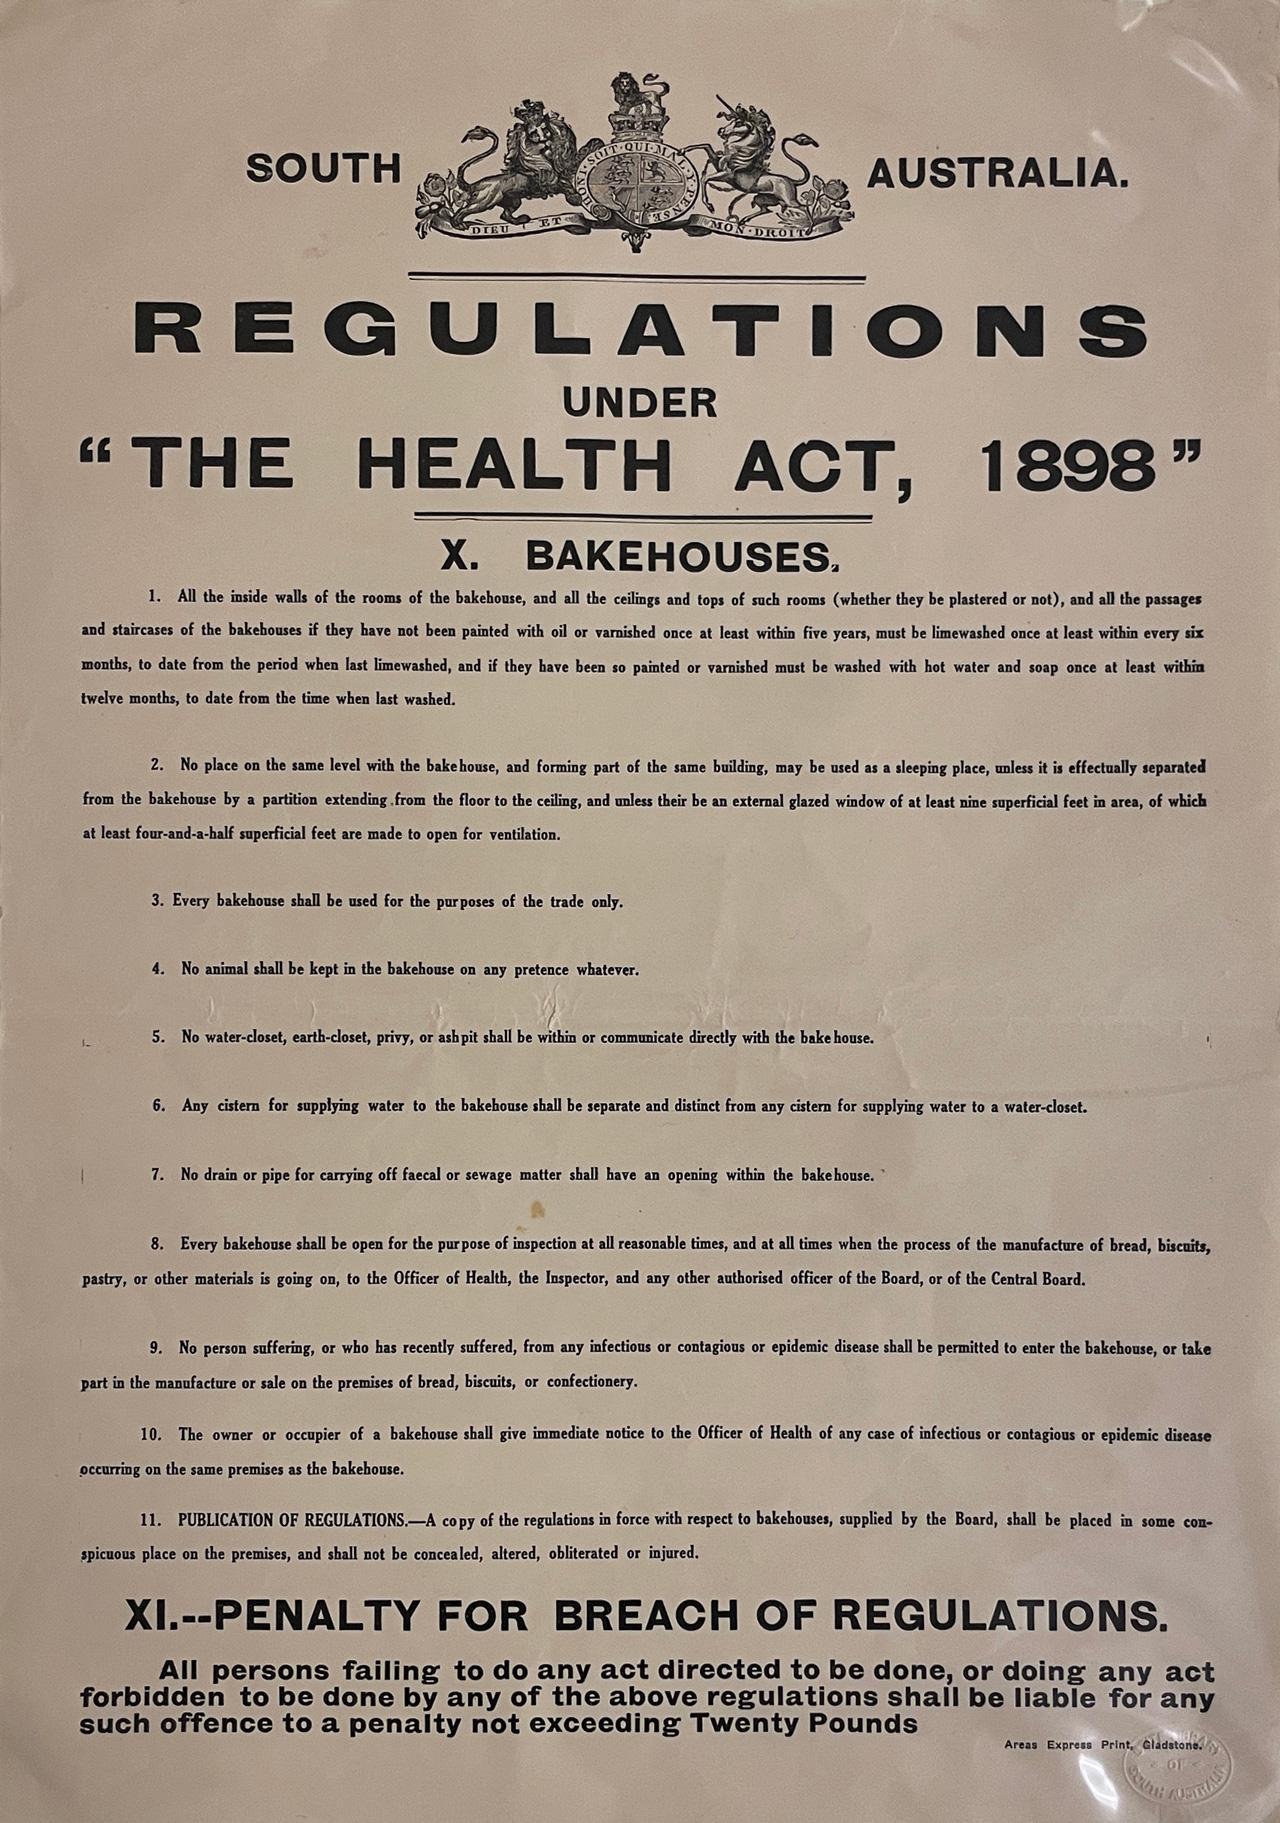 Bakehouses, Regulation 9. Poster, 1898.